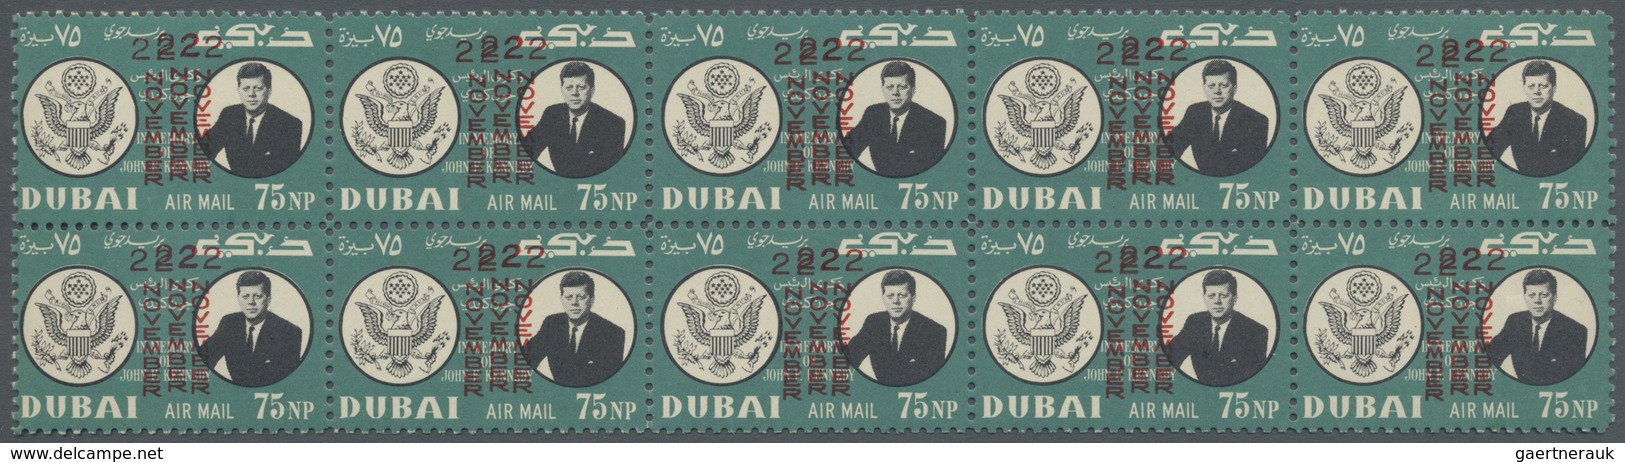 ** Thematik: Persönlichkeiten - Kennedy / Personalities - Kennedy: 1964, Dubai, 75np. "J.F.Kennedy" Per - Kennedy (John F.)